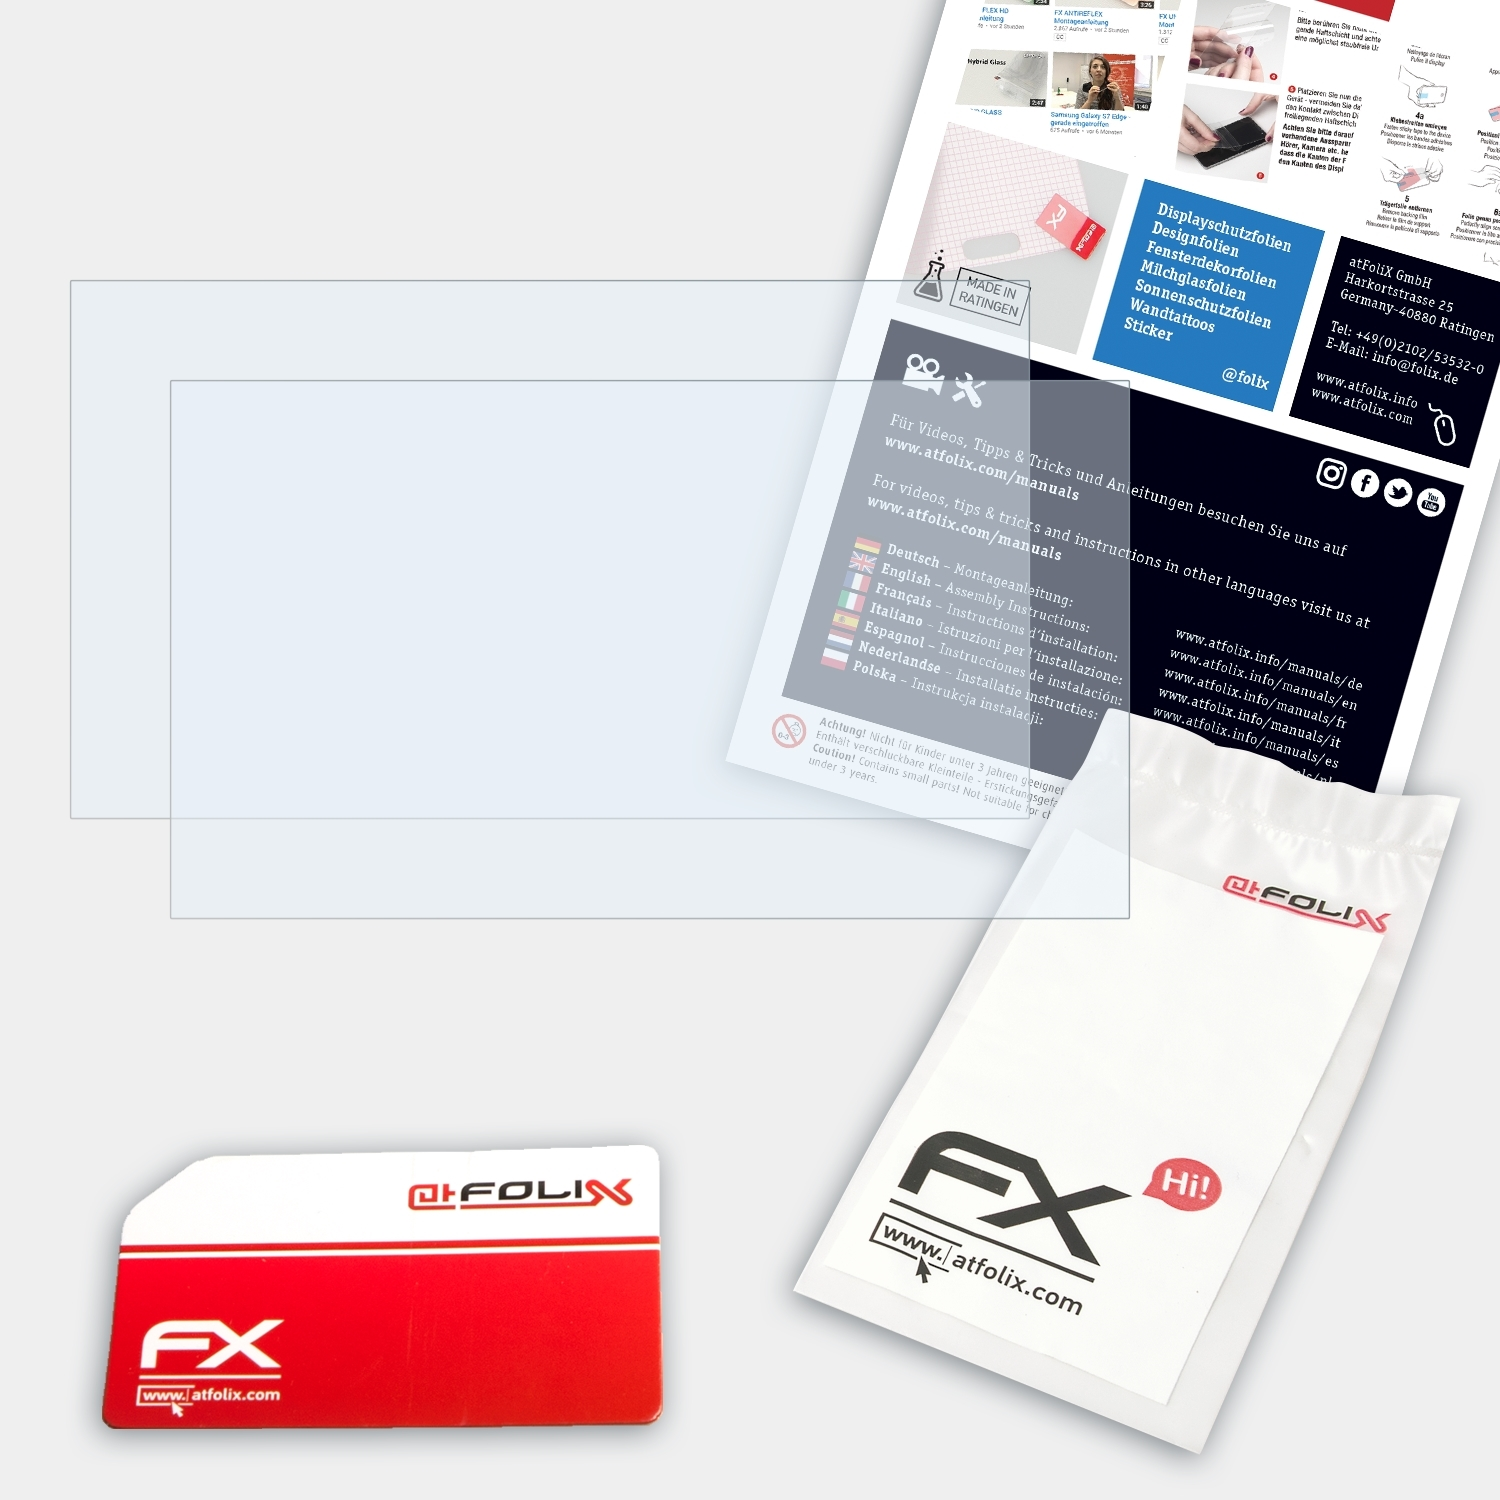 ATFOLIX 2x FX-Clear Displayschutz(für HP G6) ZBook 15